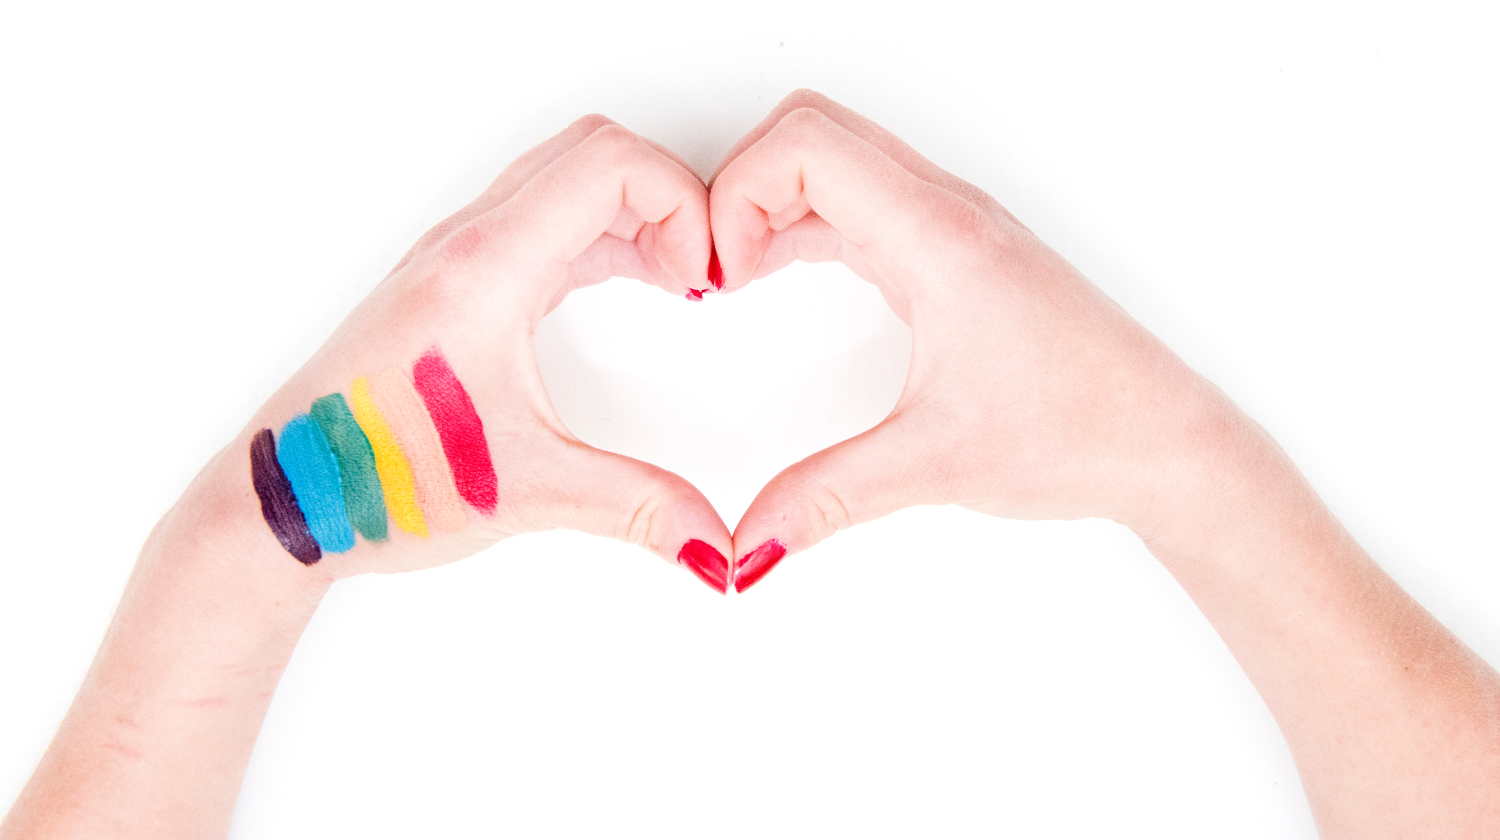 Två händer formar ett hjärta, ena handen har en målad prideflagga.